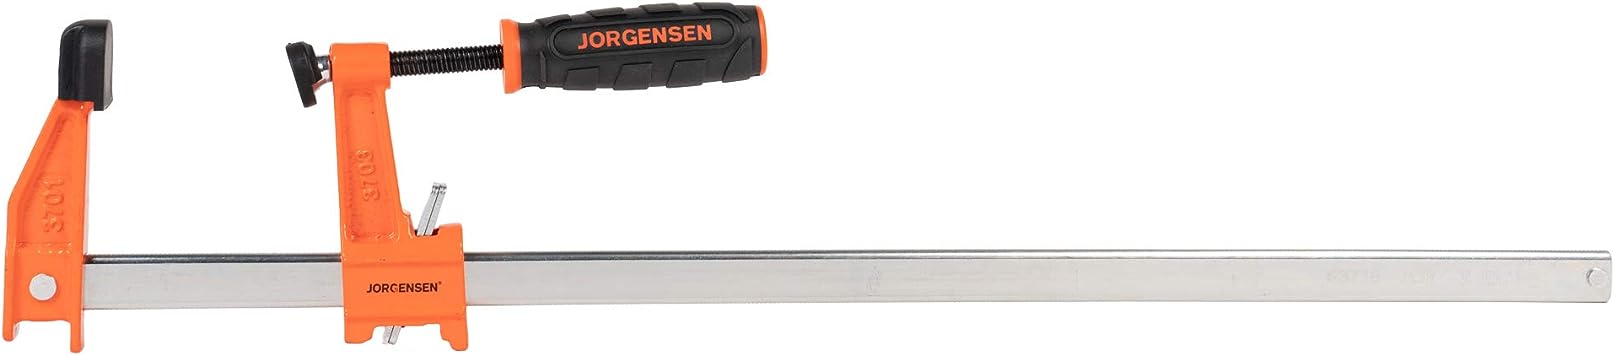 Jorgensen 3718 18-Inch Steel Bar Clamp